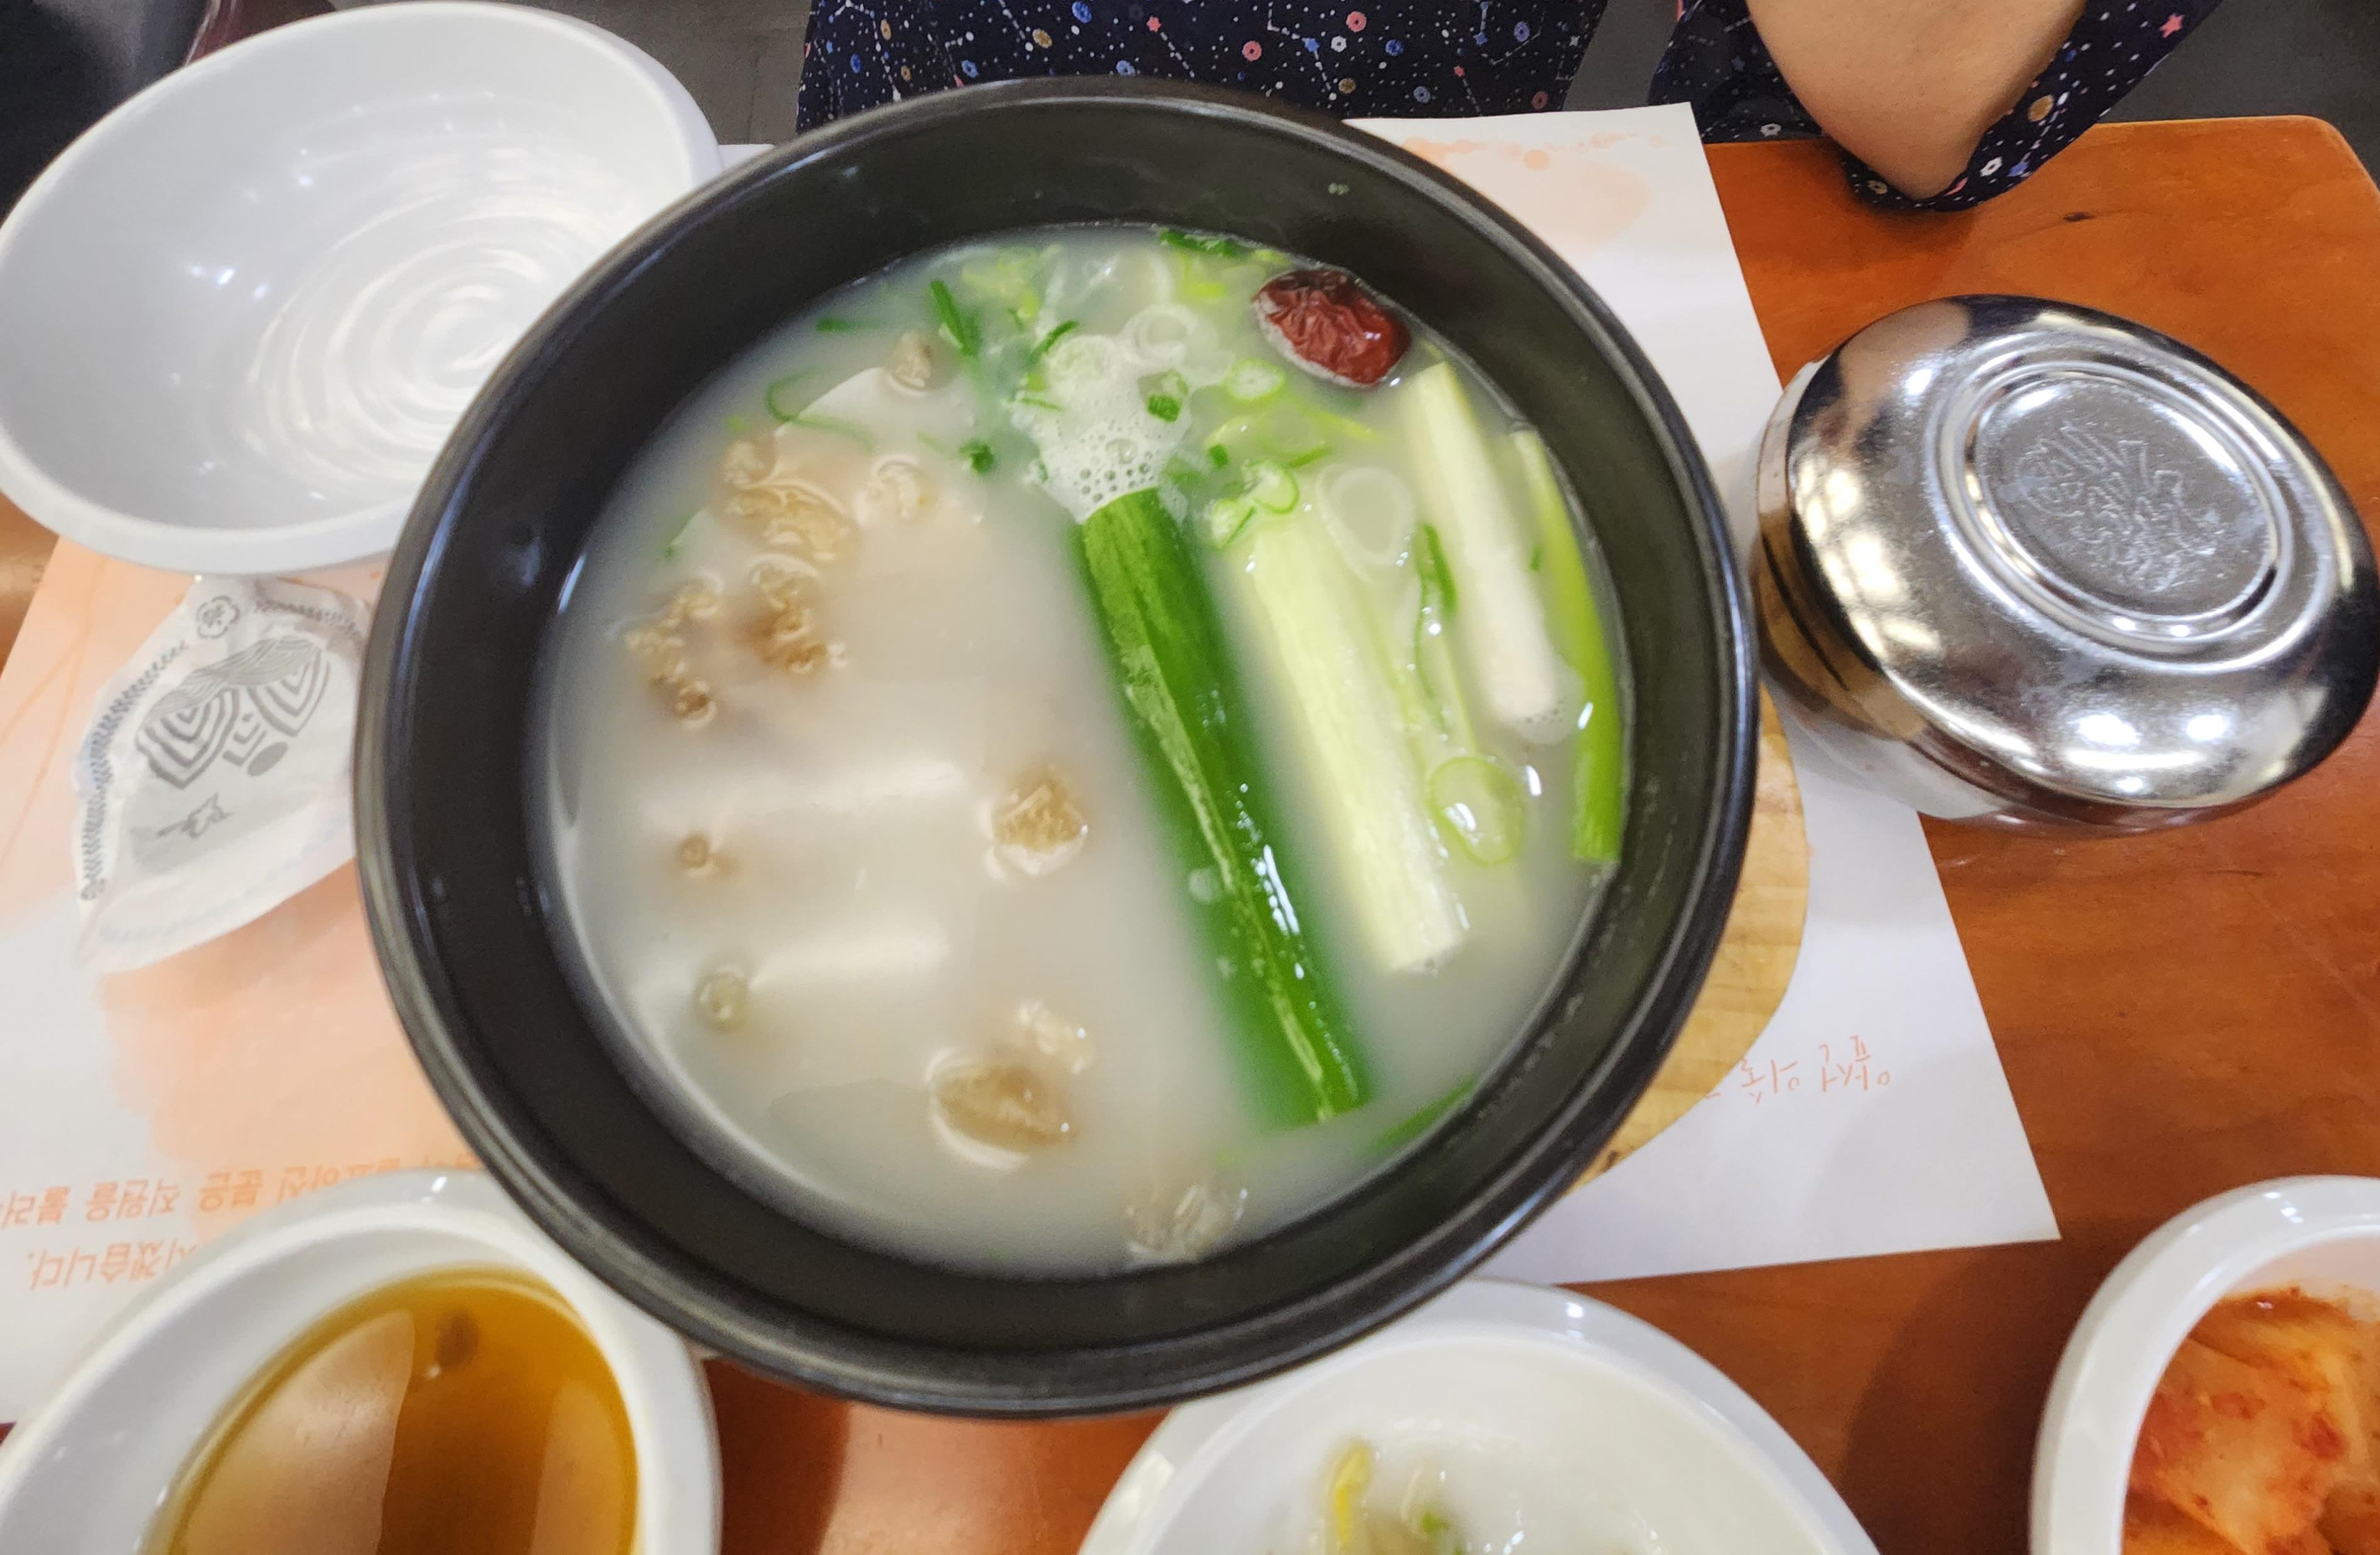 서울 아산병원 식당 금강산(한식당)